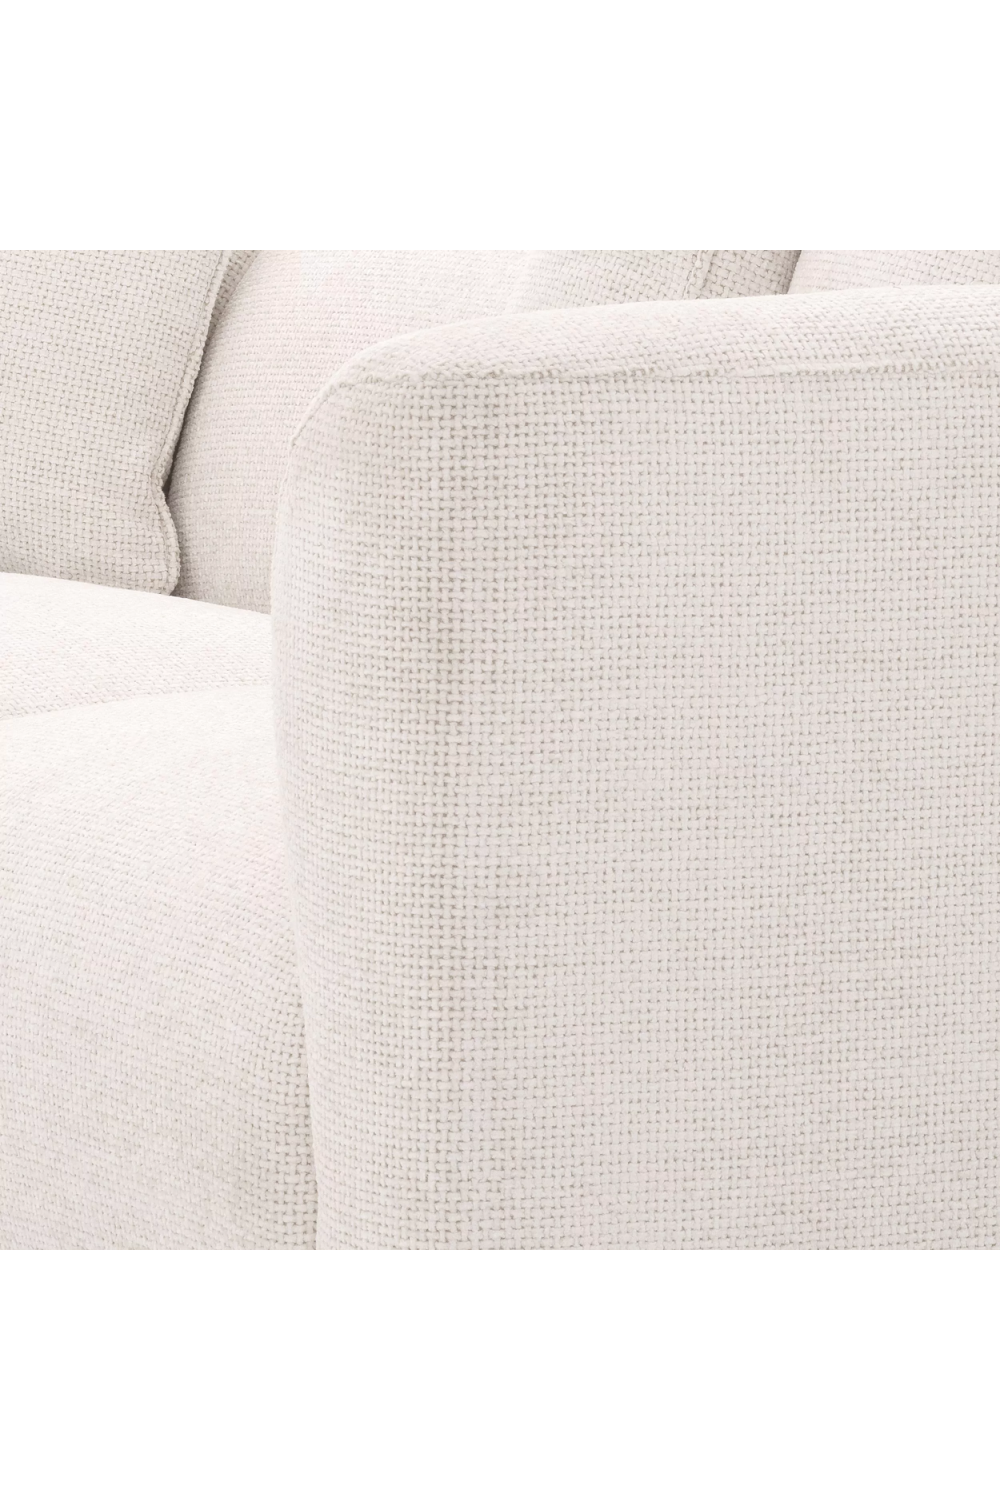 White Upholstered Modern Sofa | Eichholtz Corso | OROA.com